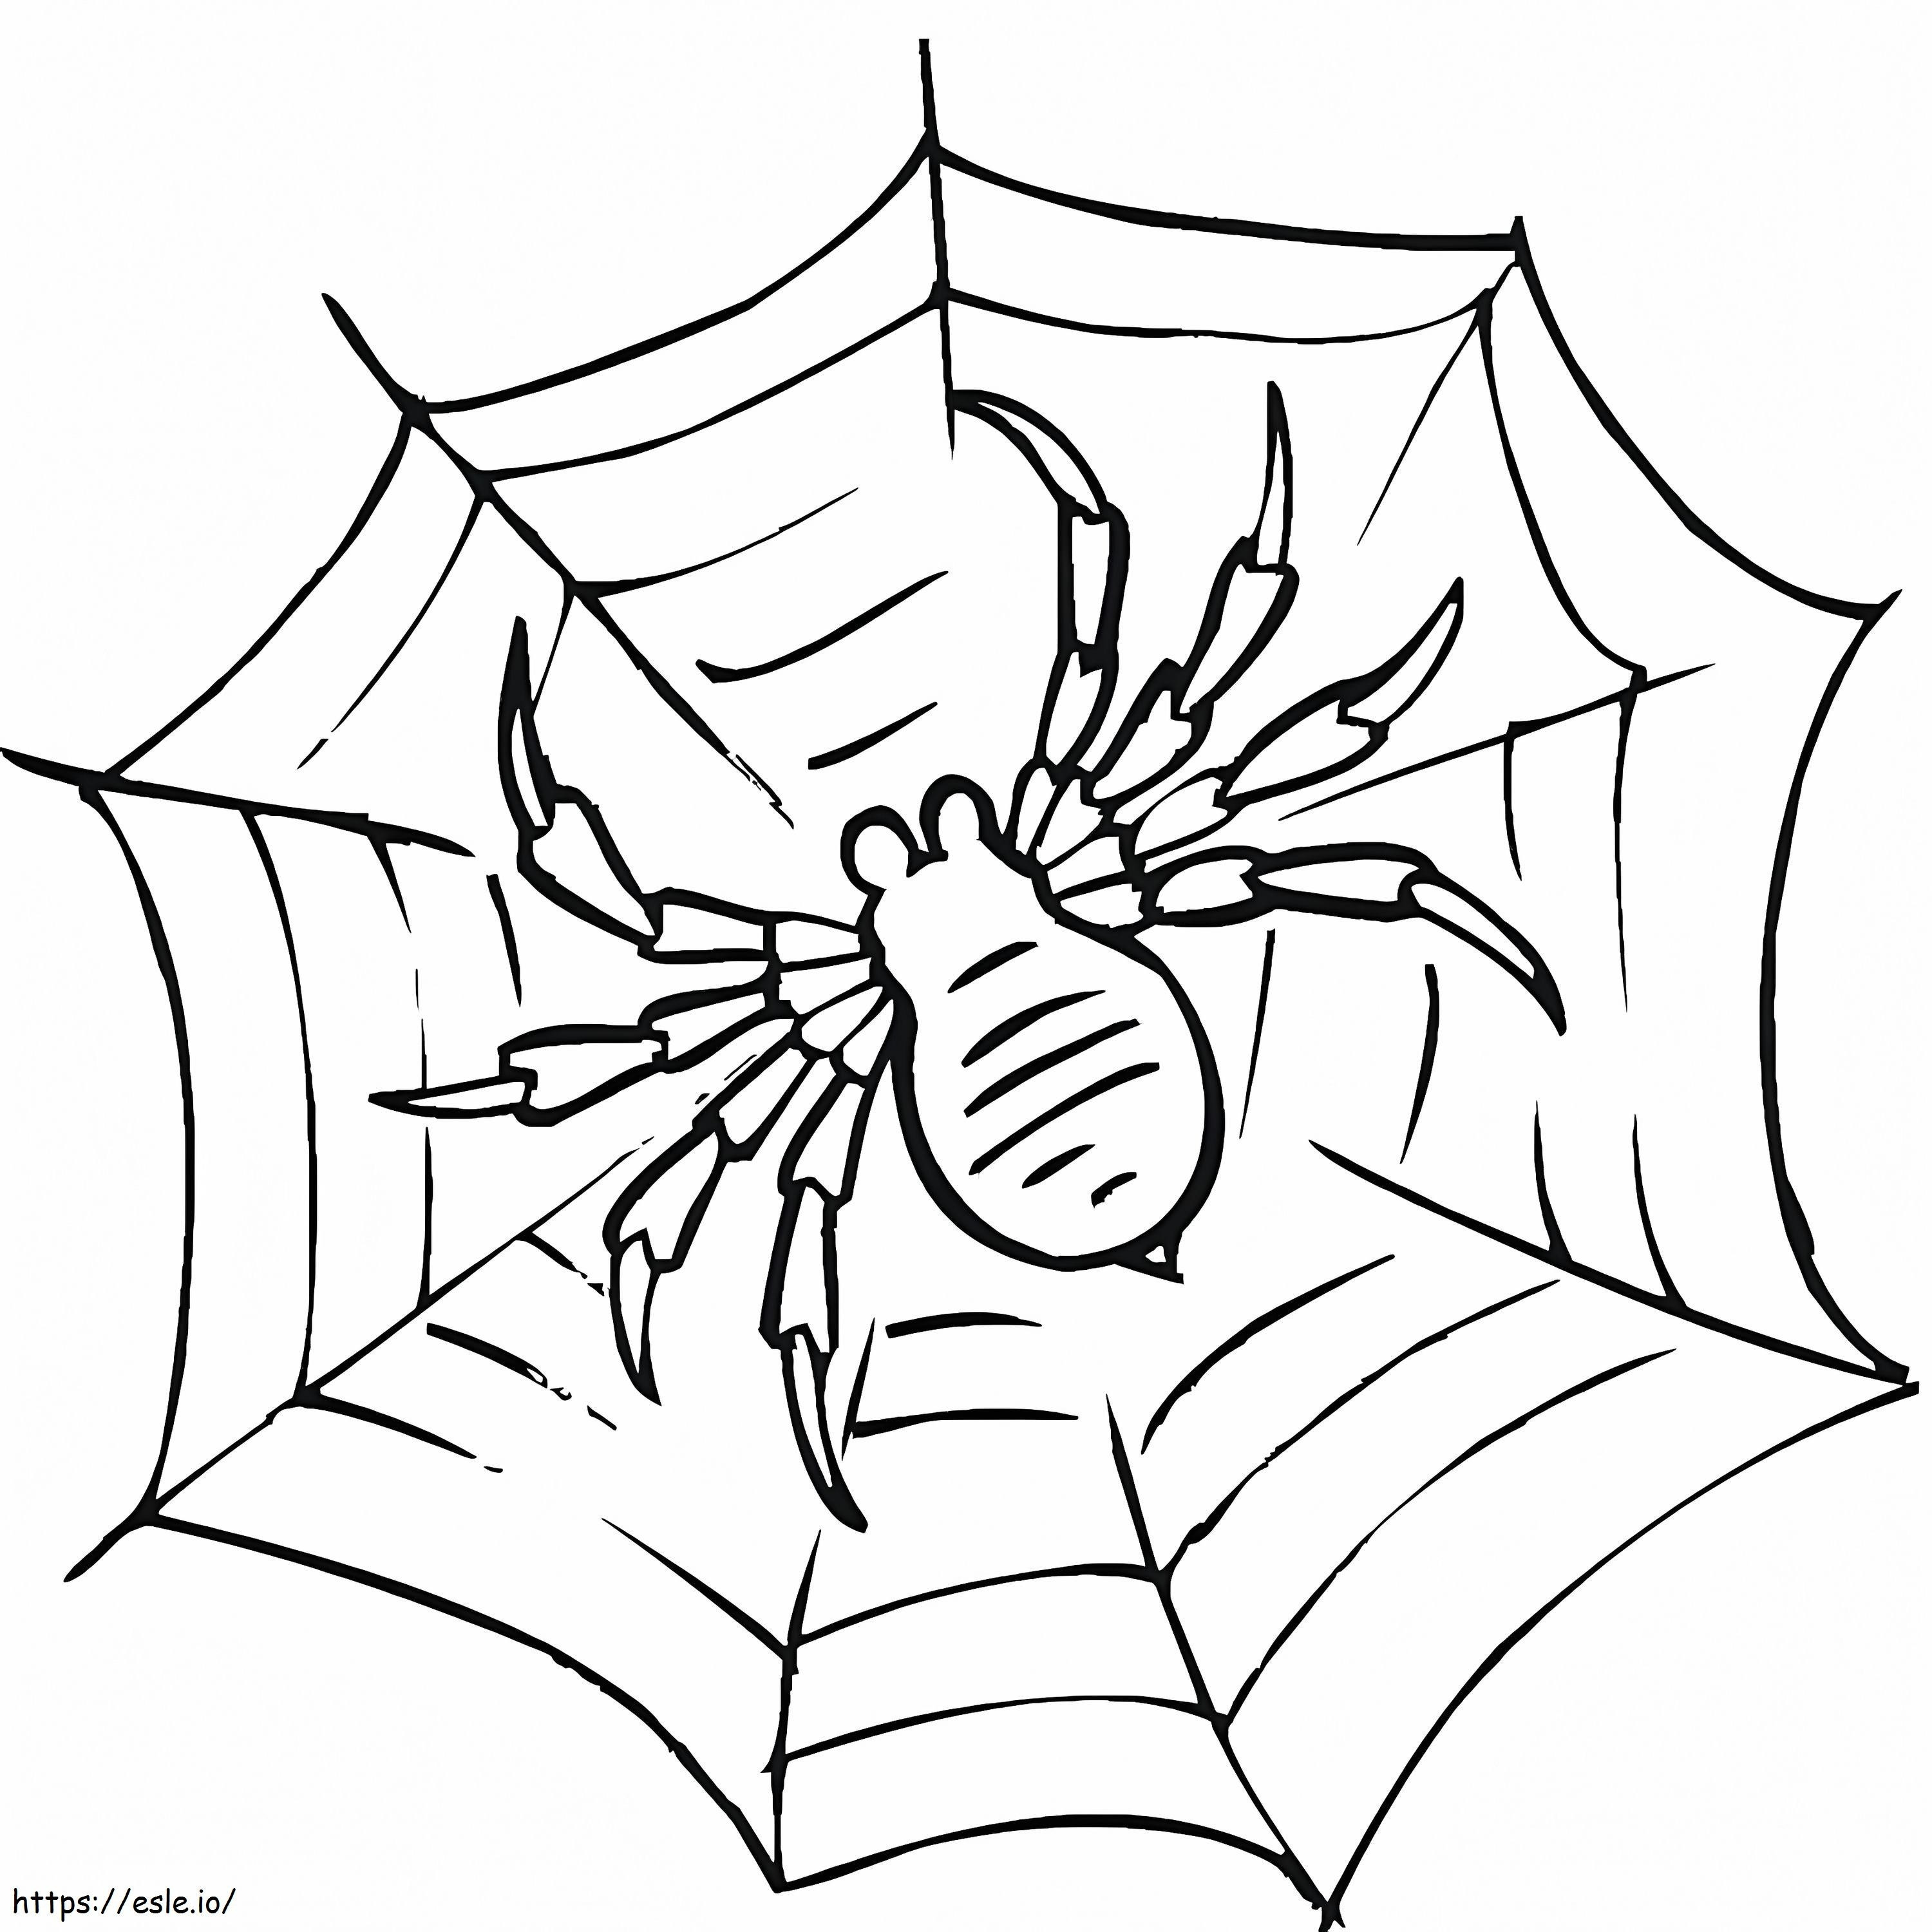 Örümcek Ağında Örümcek boyama